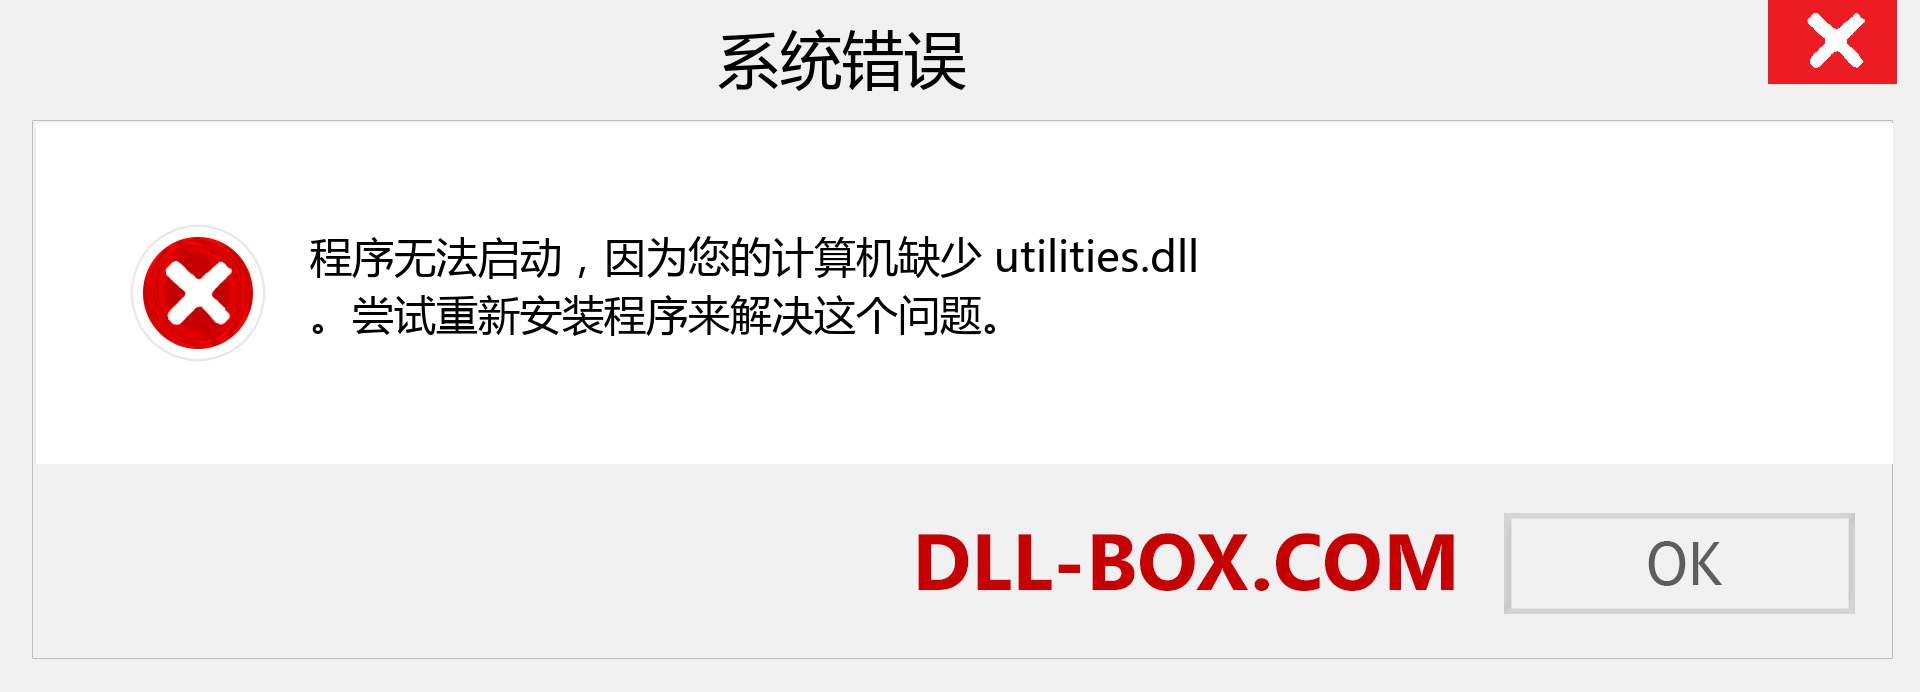 utilities.dll 文件丢失？。 适用于 Windows 7、8、10 的下载 - 修复 Windows、照片、图像上的 utilities dll 丢失错误